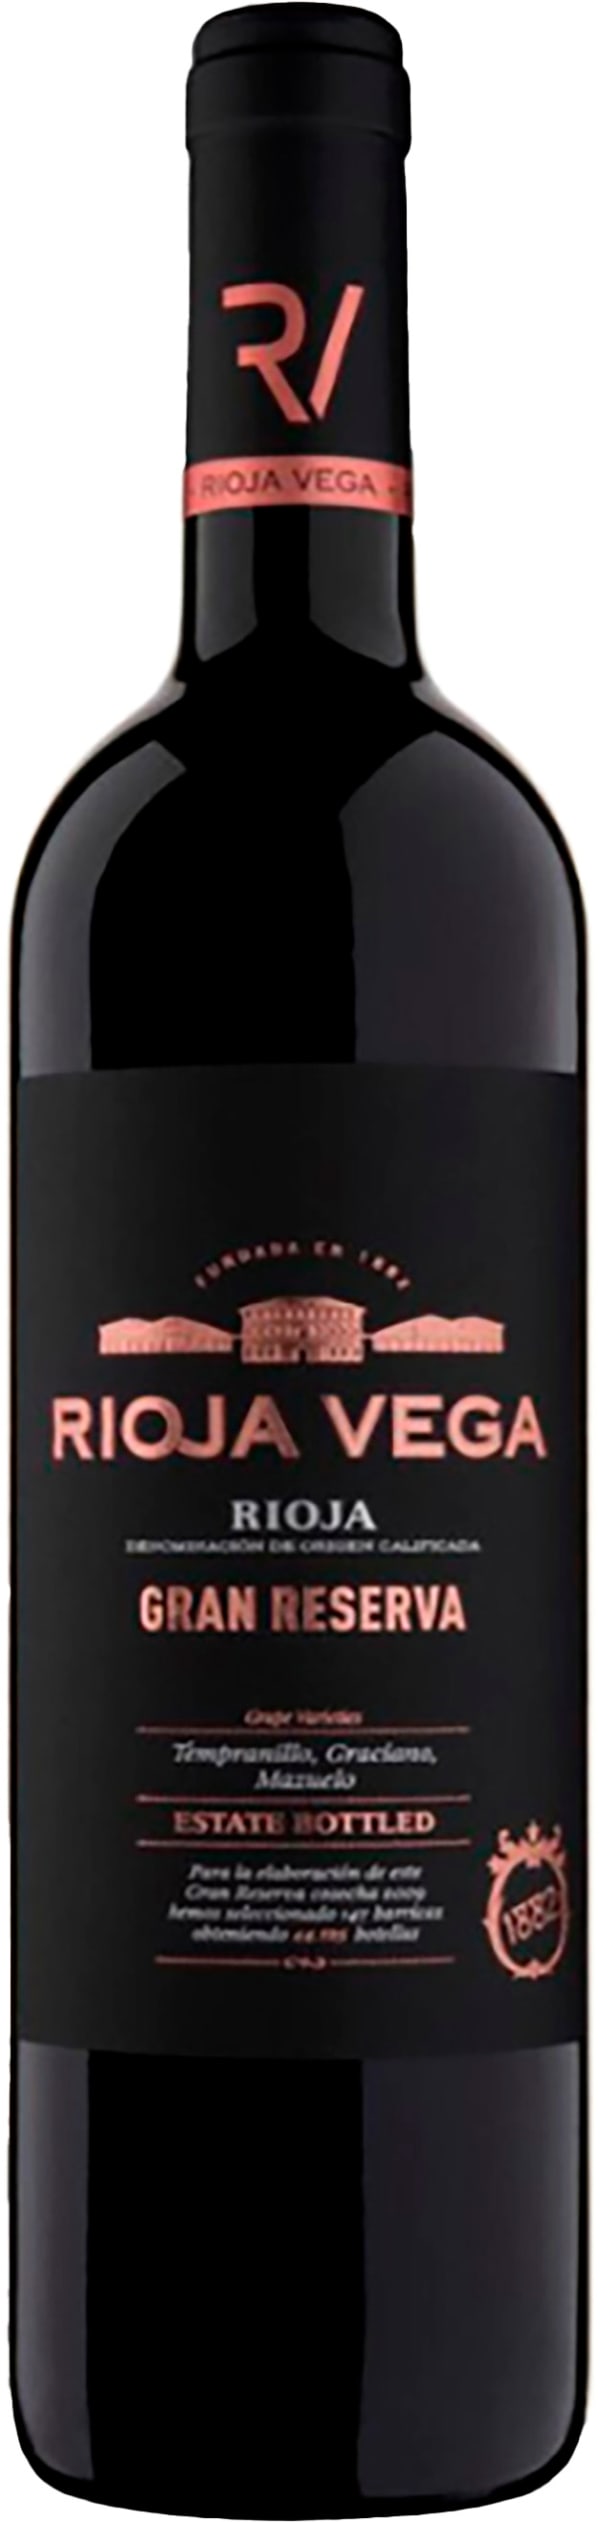 Rioja Vega